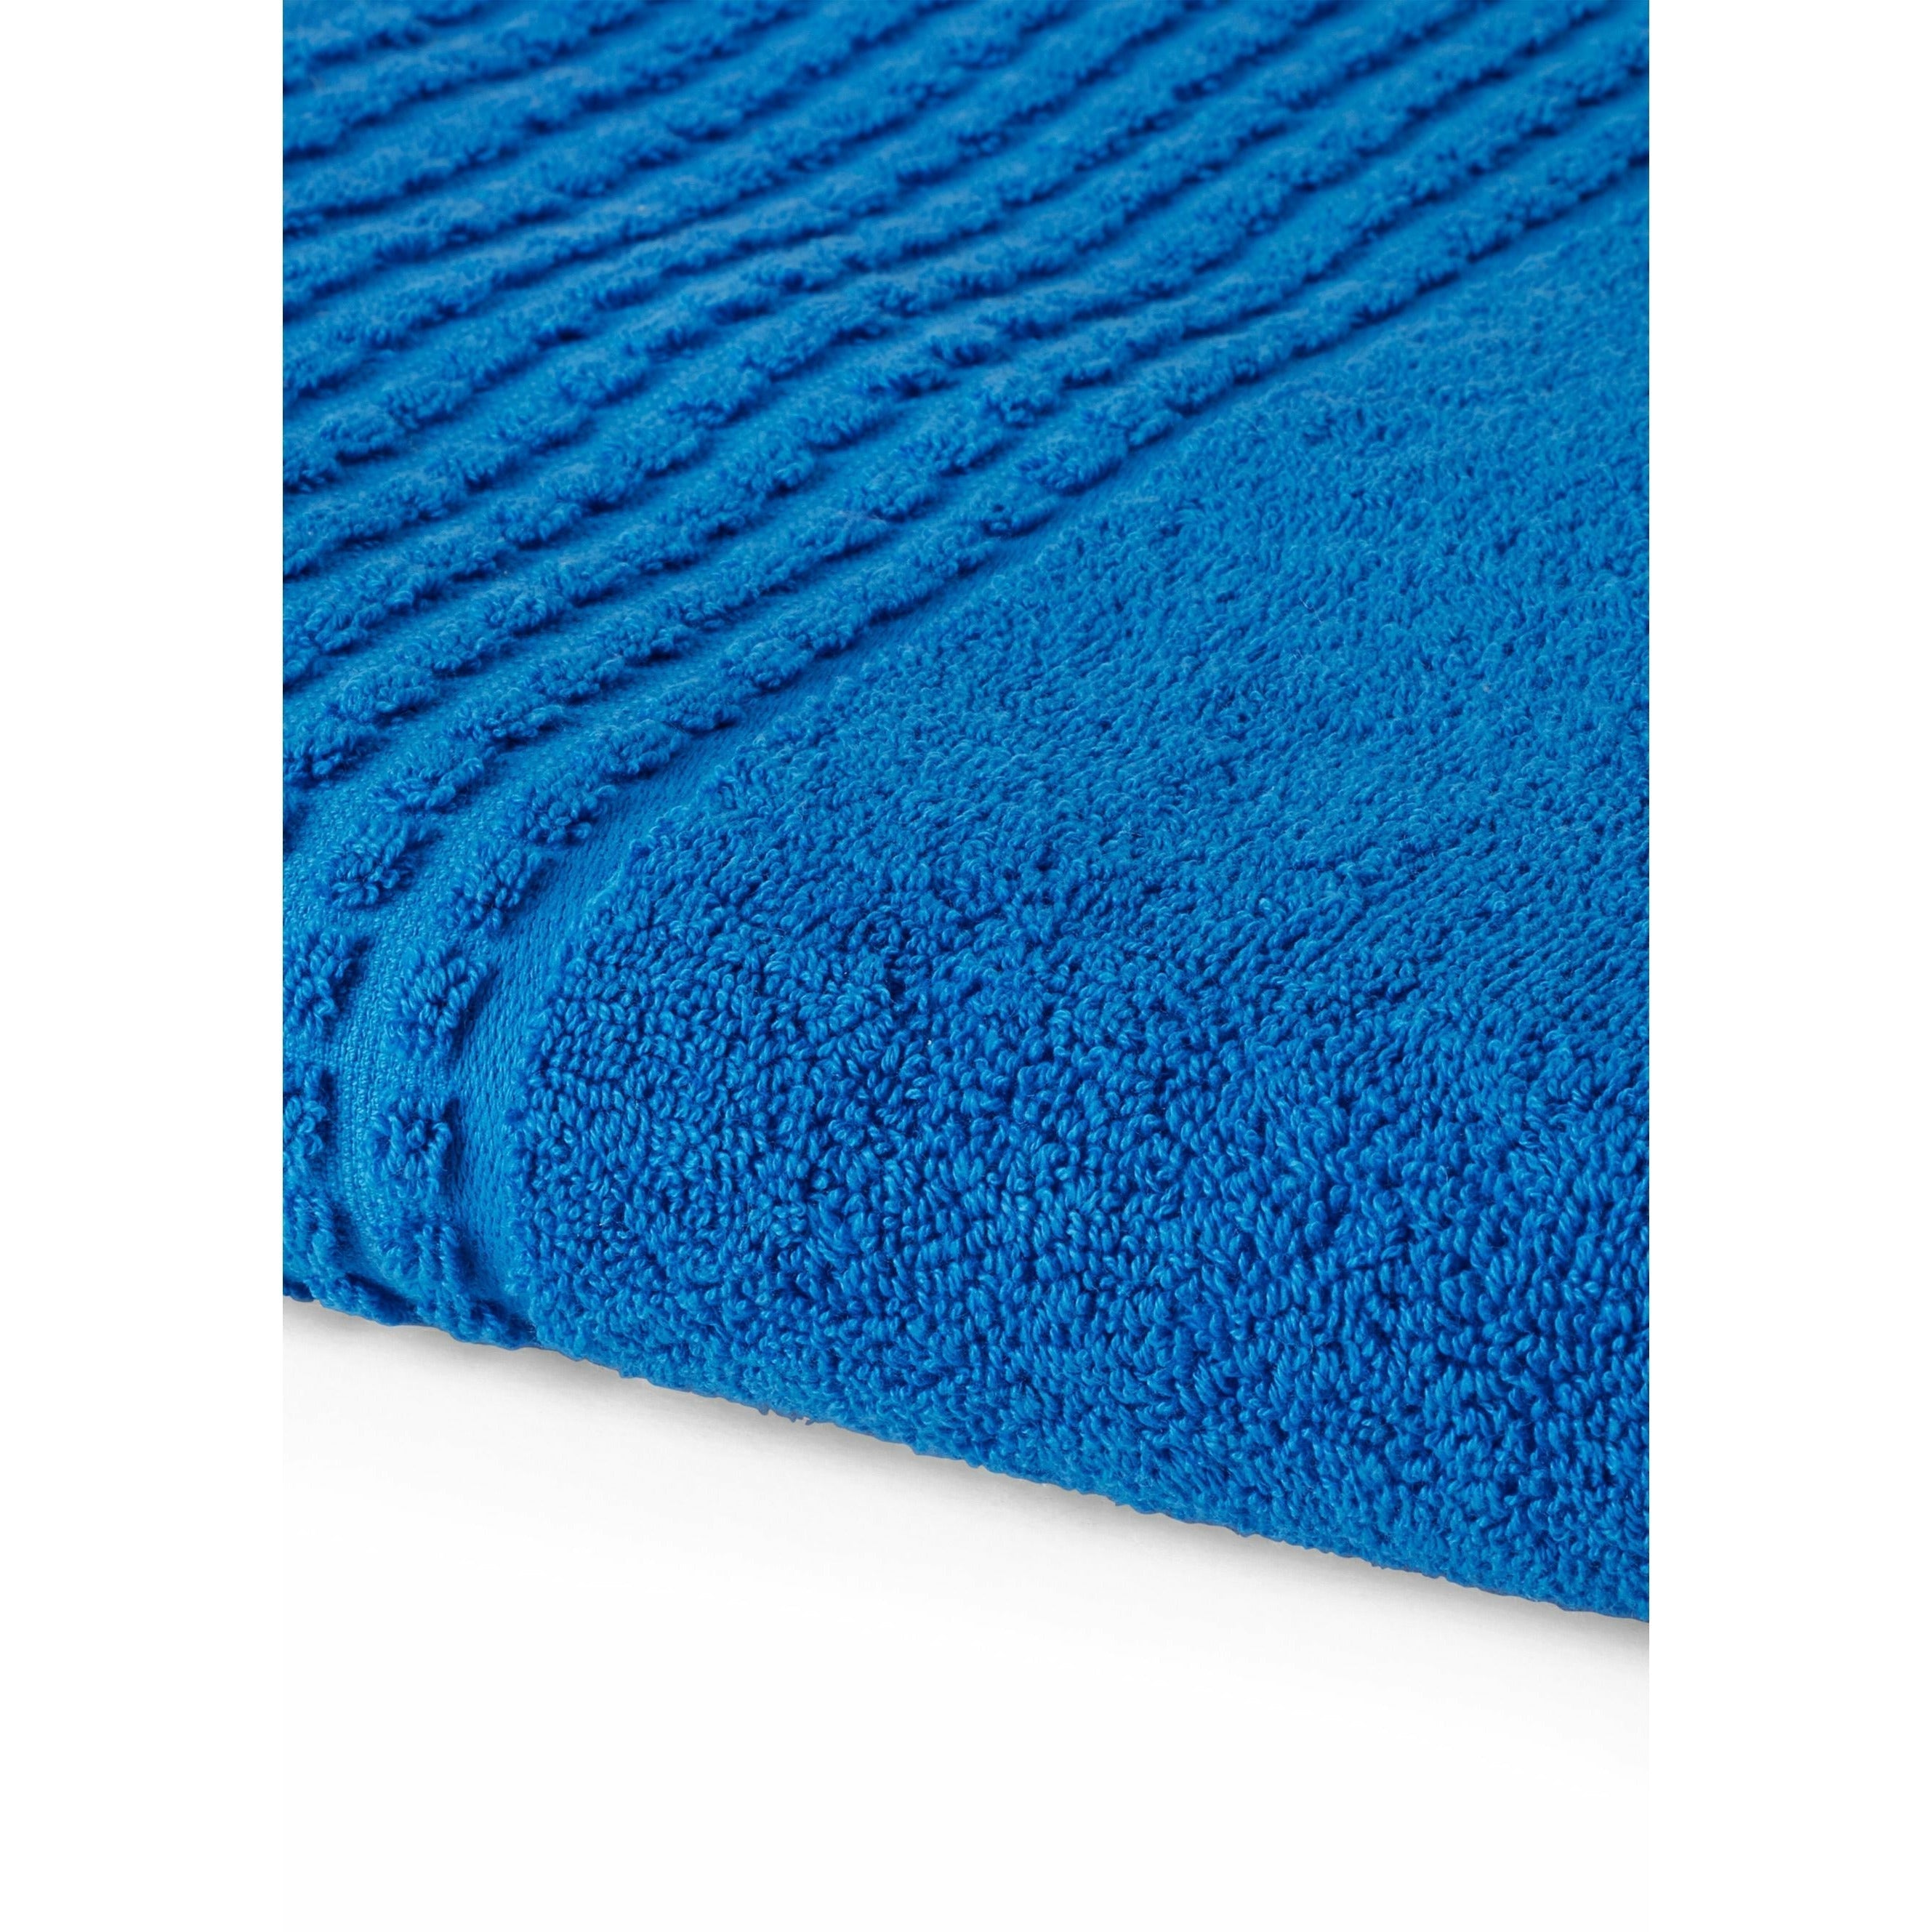 Juna Check Towel 70x140 cm, bleu